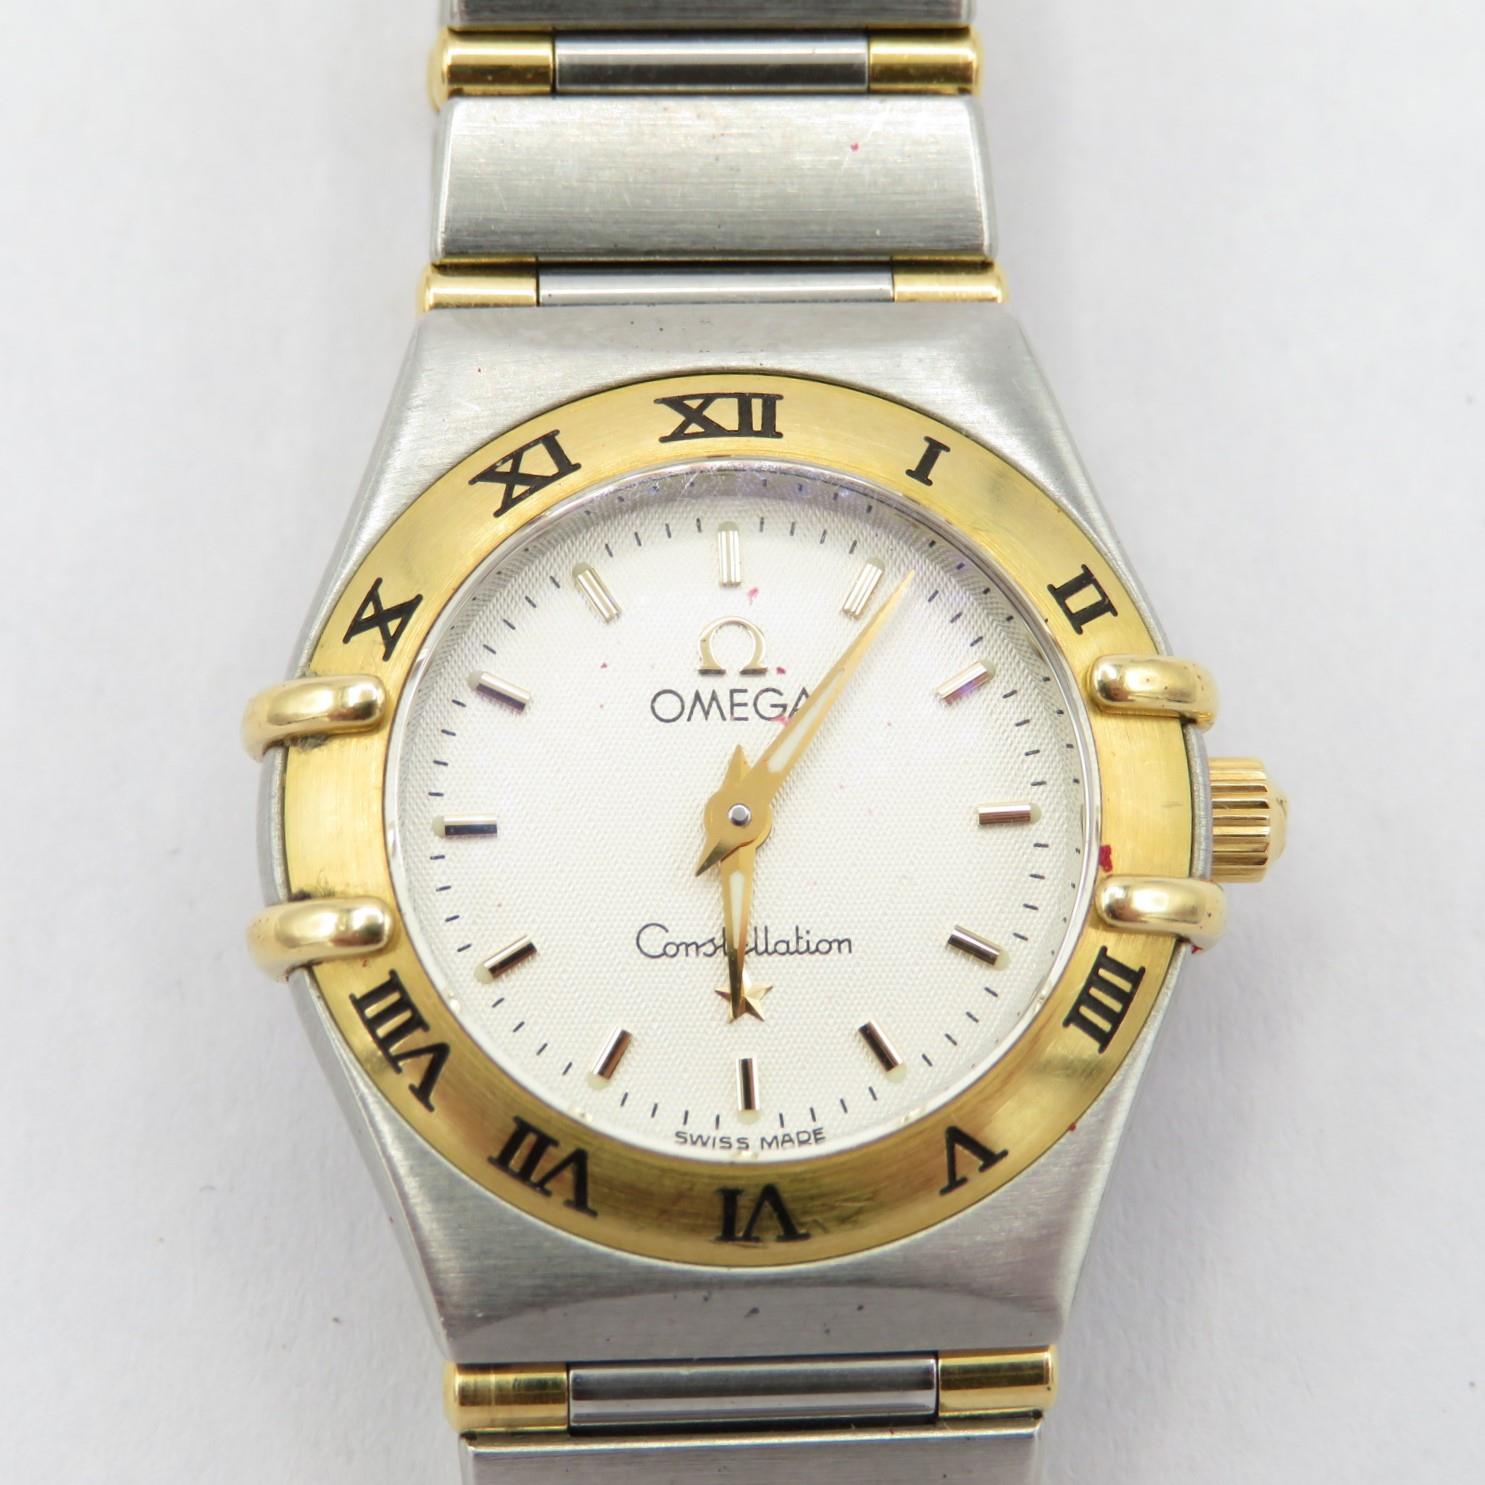 Omega Constellation Ladies steel and 18 ct gold quartz wristwatch requires service/repair requires - Image 2 of 7